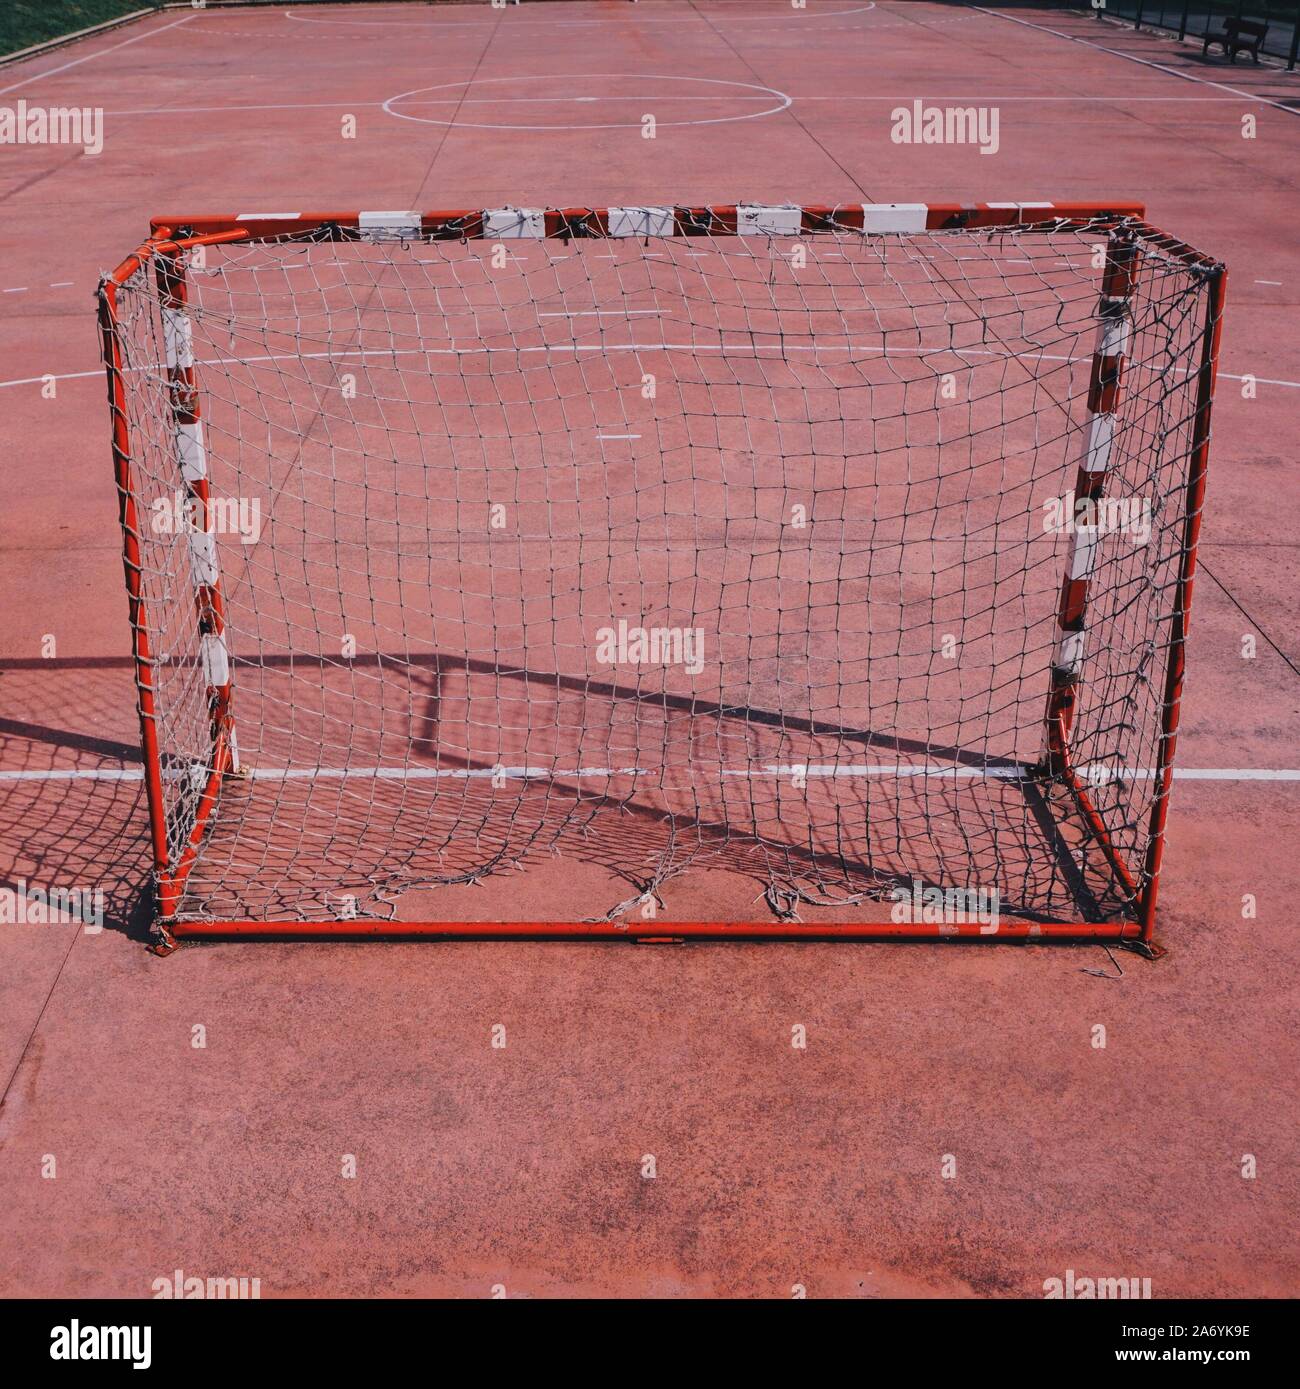 Obiettivo calcio attrezzature sportive sul campo rosso su strada Foto Stock